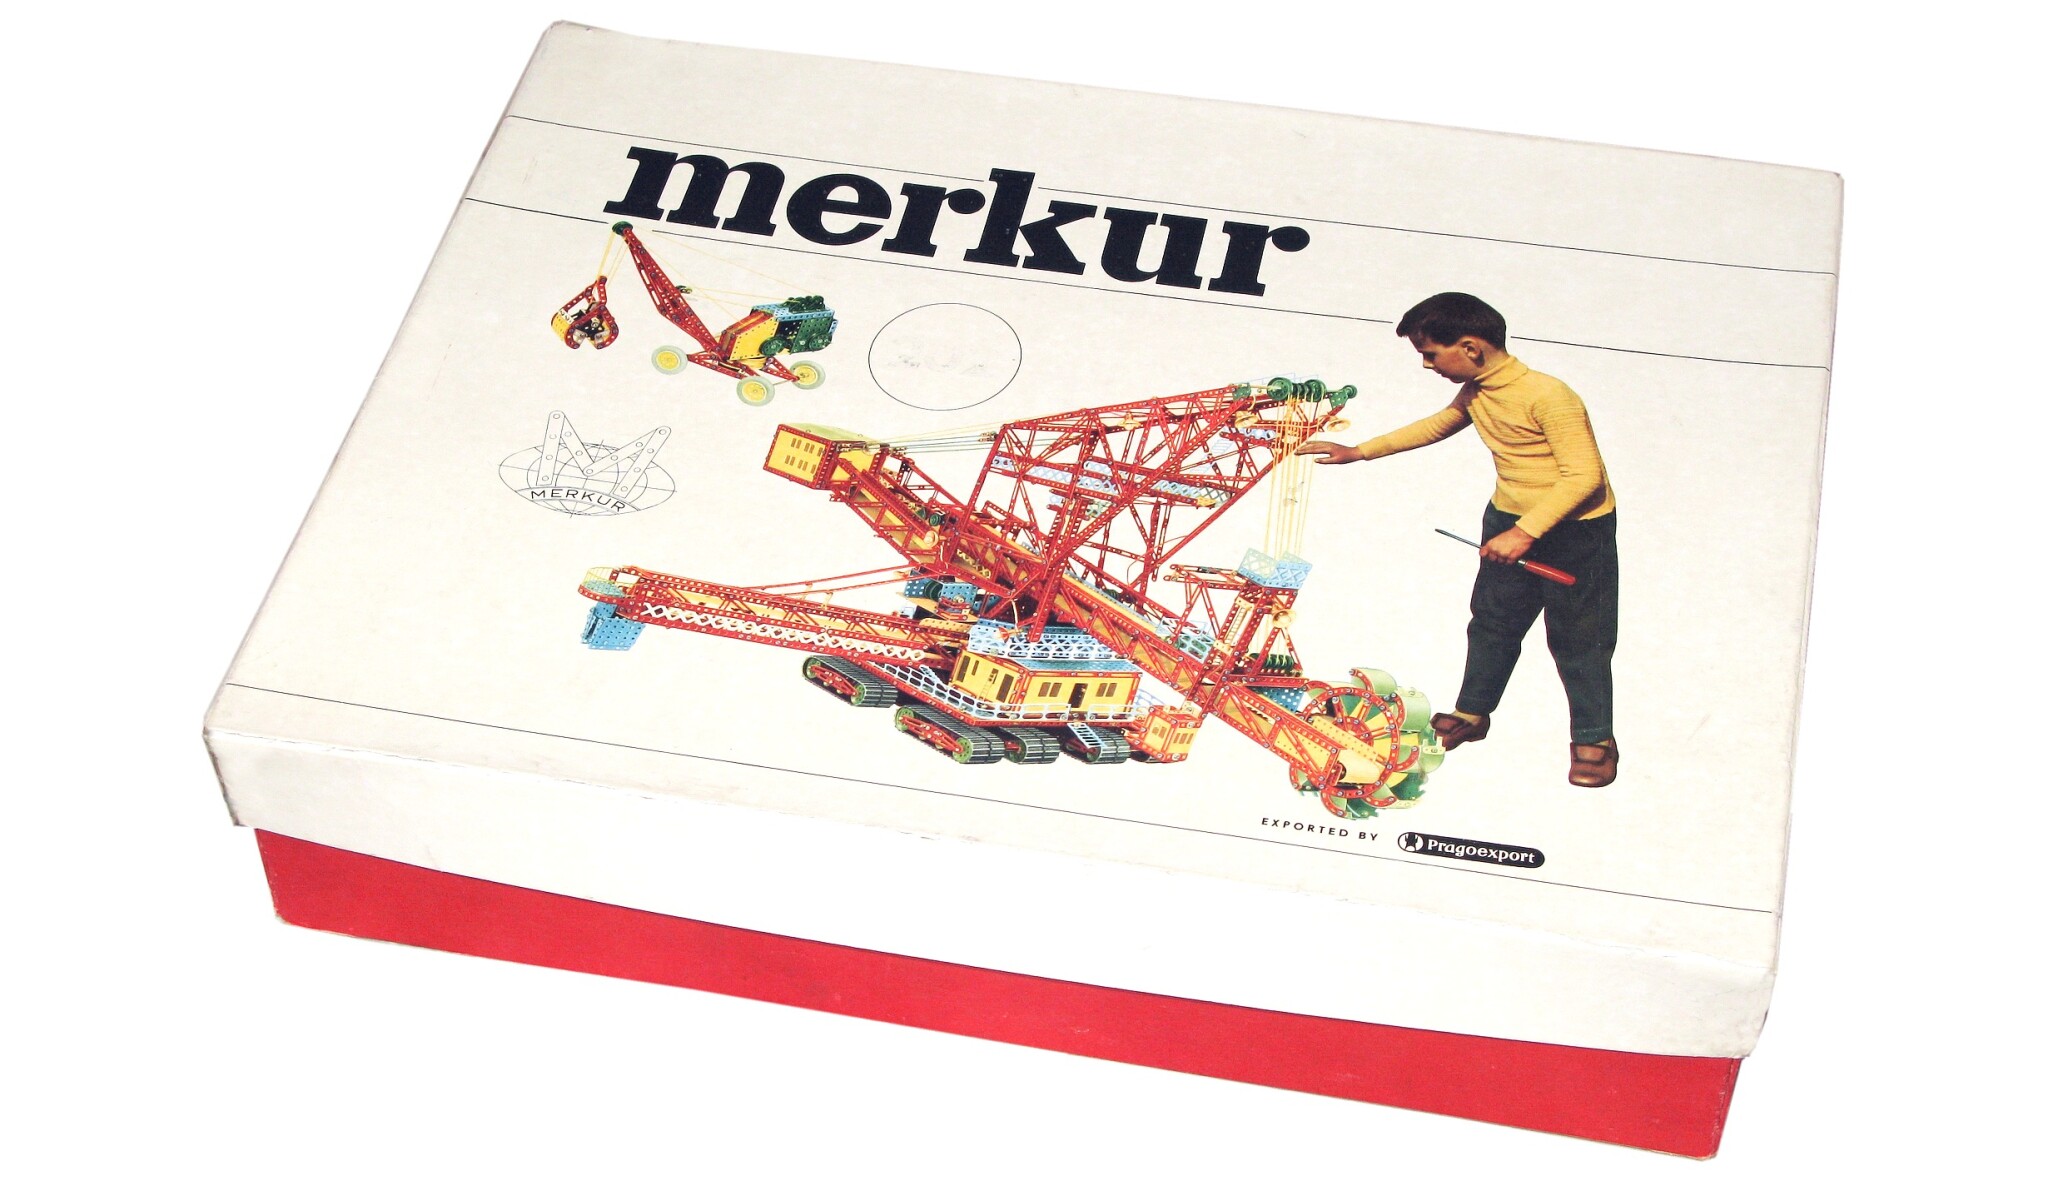 Stavebnice Merkur slaví sto let. Jejího vynálezce nechali komunisté dřít do osmdesáti u soustruhu